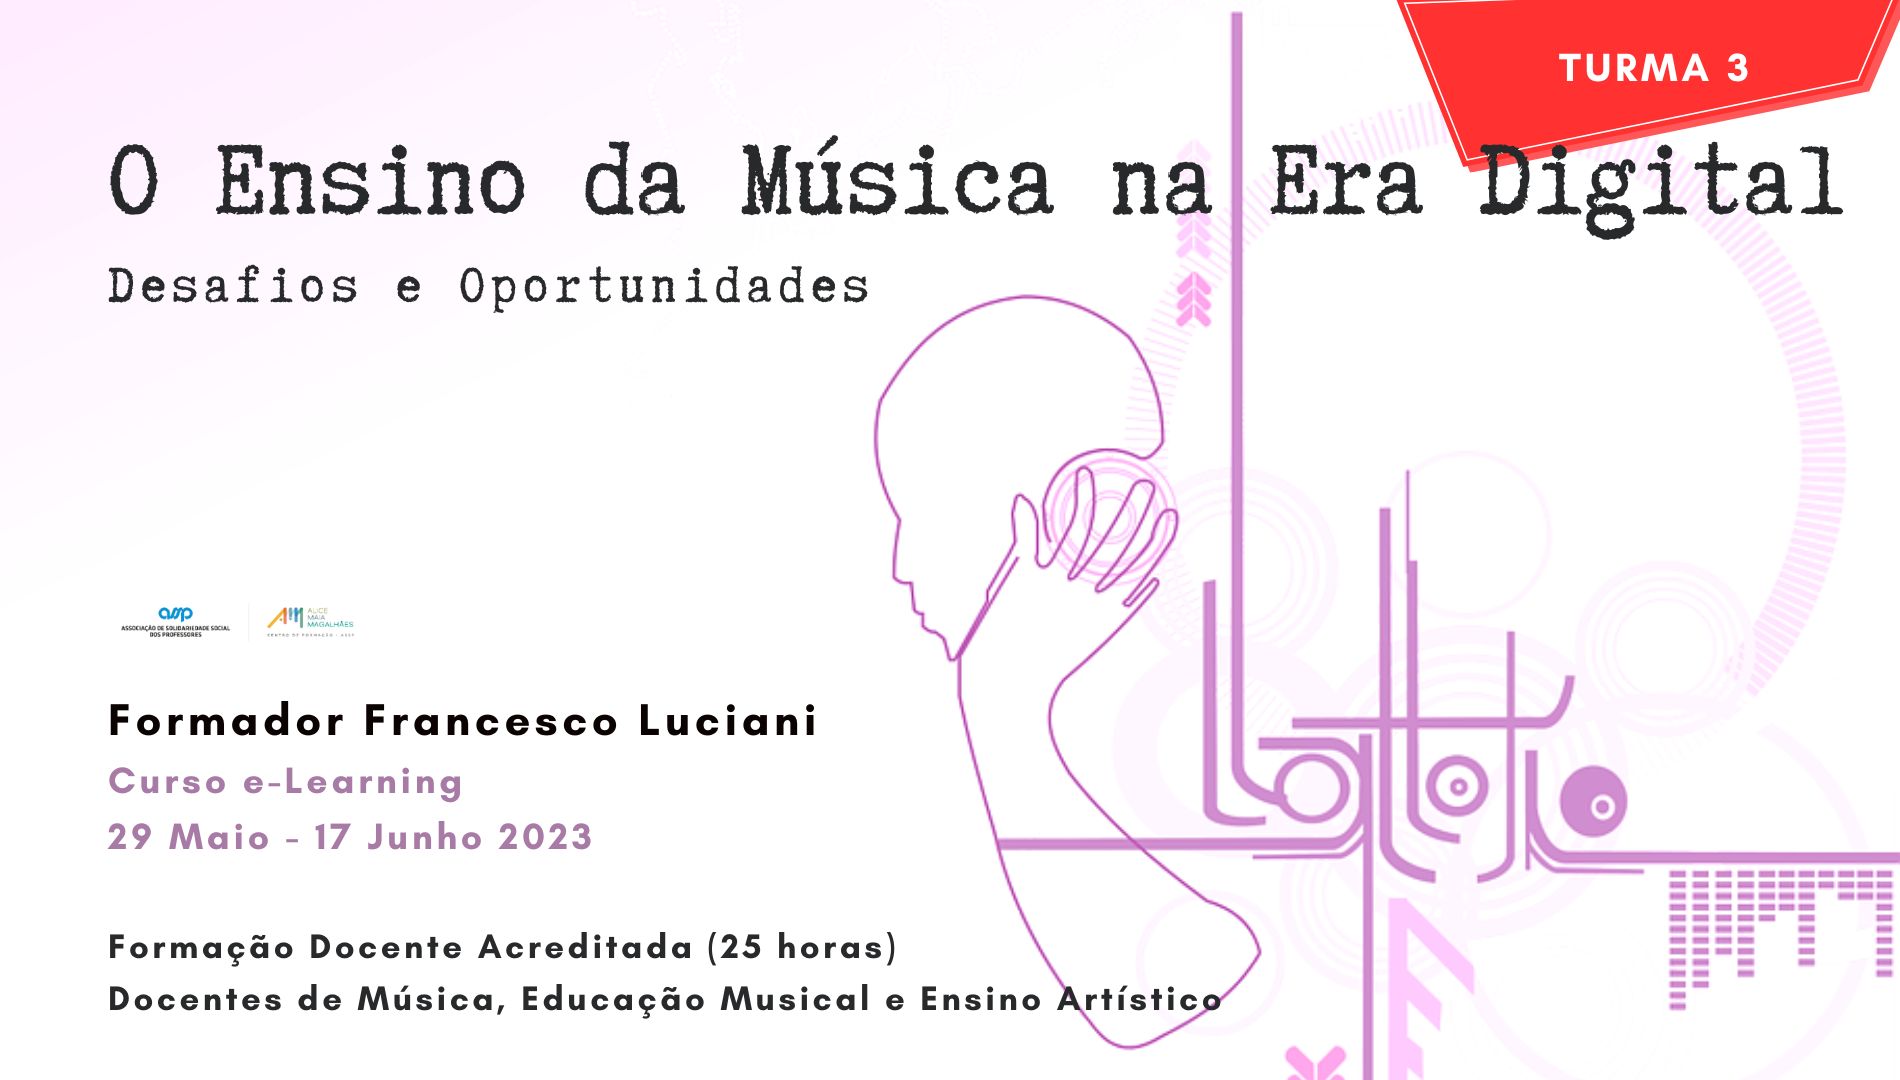 Formação Docente Online - O Ensino da Música na Era Digital: Desafios e Oportunidades - Formador Francesco Luciani (Turma 3)